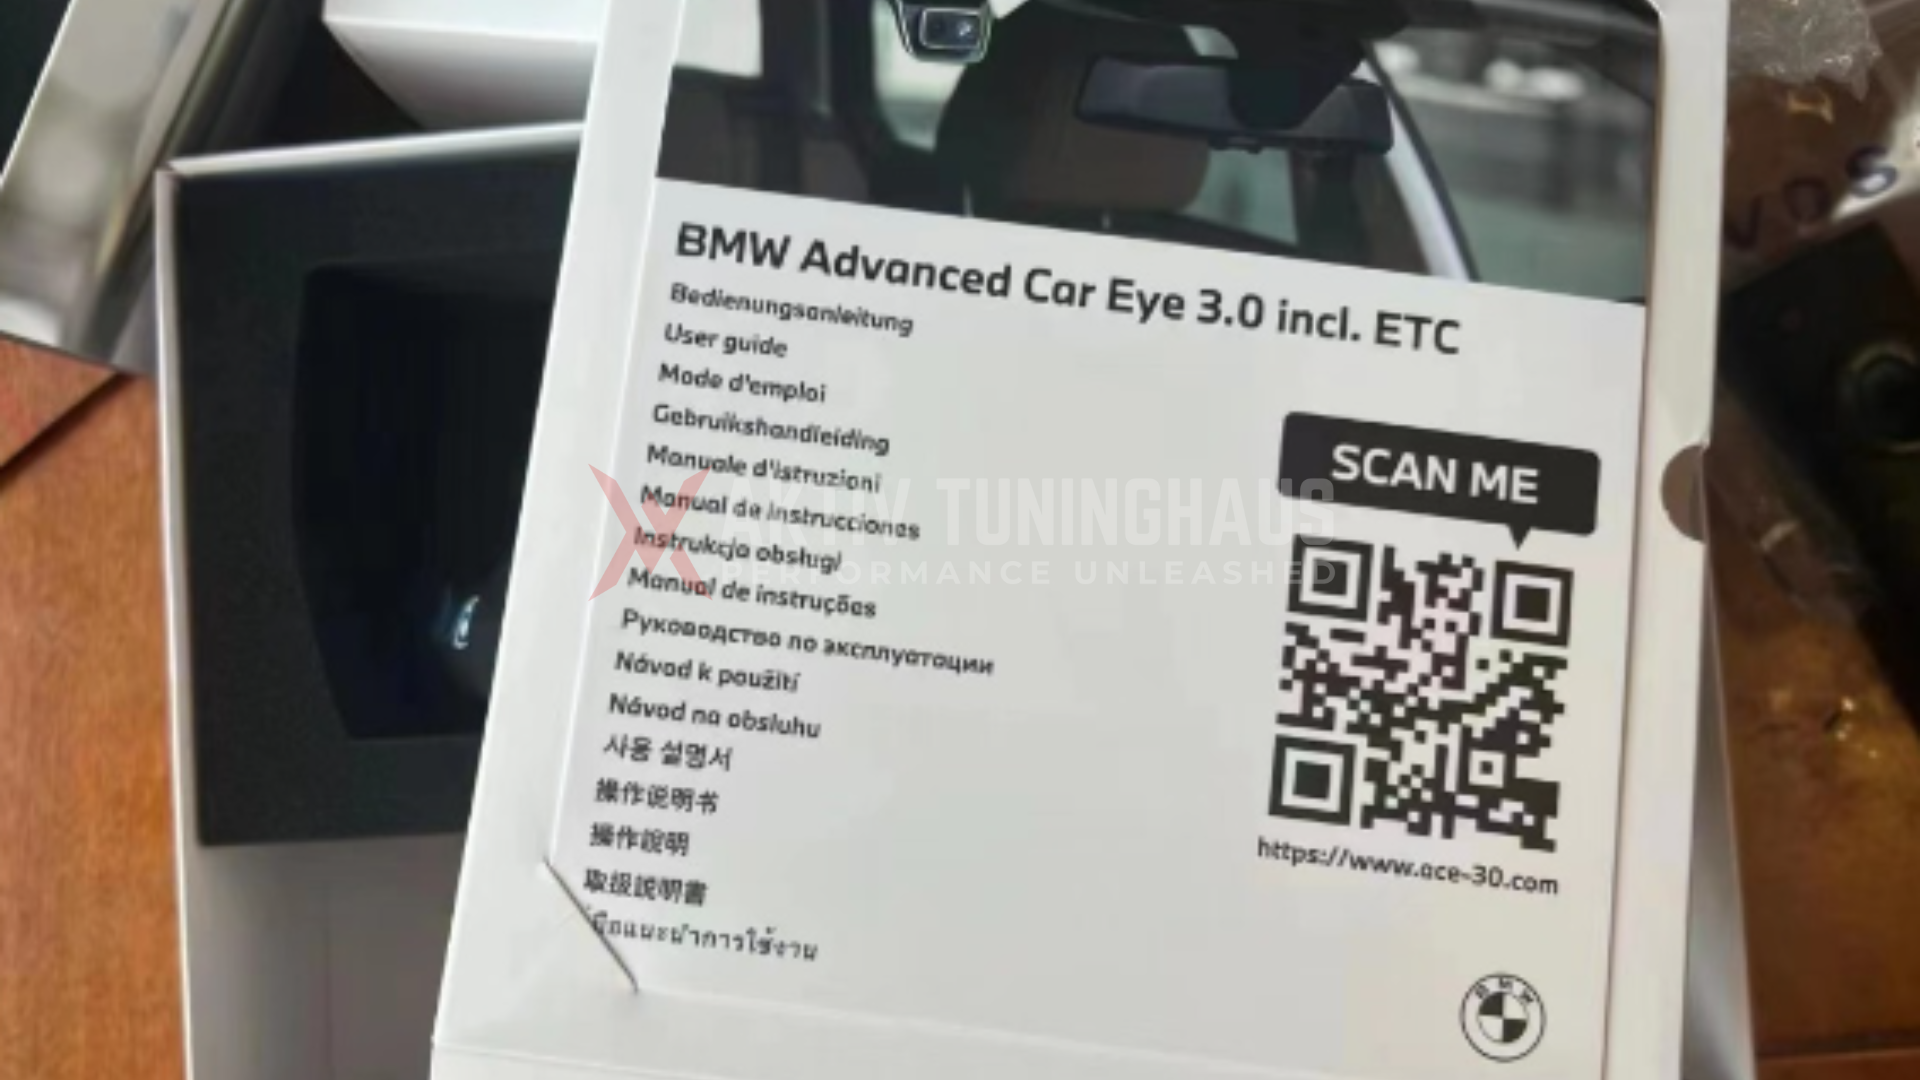 BMW Advanced Car Eye 3.0 Pro, Interior